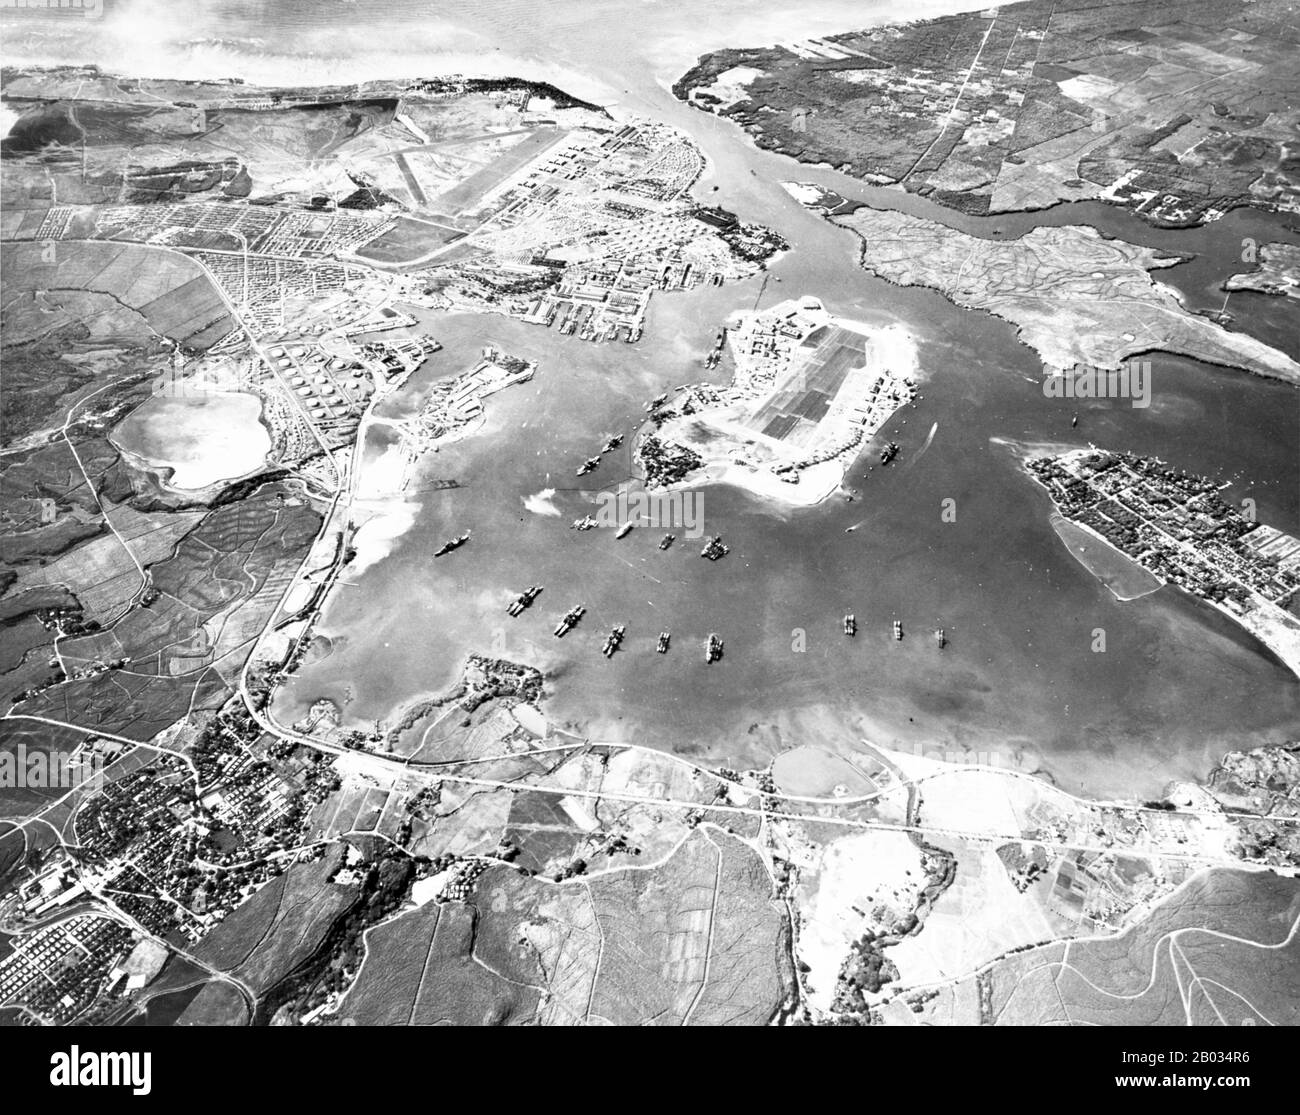 Pearl Harbor è un porto lagunare sull'isola di Oahu, Hawaii, a ovest di Honolulu. Gran parte del porto e delle terre circostanti è una base navale della Marina degli Stati Uniti. È anche la sede della United States Pacific Fleet. Il governo degli Stati Uniti ha ottenuto per la prima volta l'uso esclusivo dell'ingresso e il diritto di mantenere una stazione di riparazione e di caccia per le navi qui nel 1887. L'attacco a Pearl Harbor da parte dell'Impero del Giappone il 7 dicembre 1941 fu la causa immediata dell'entrata degli Stati Uniti nella seconda guerra mondiale Foto Stock